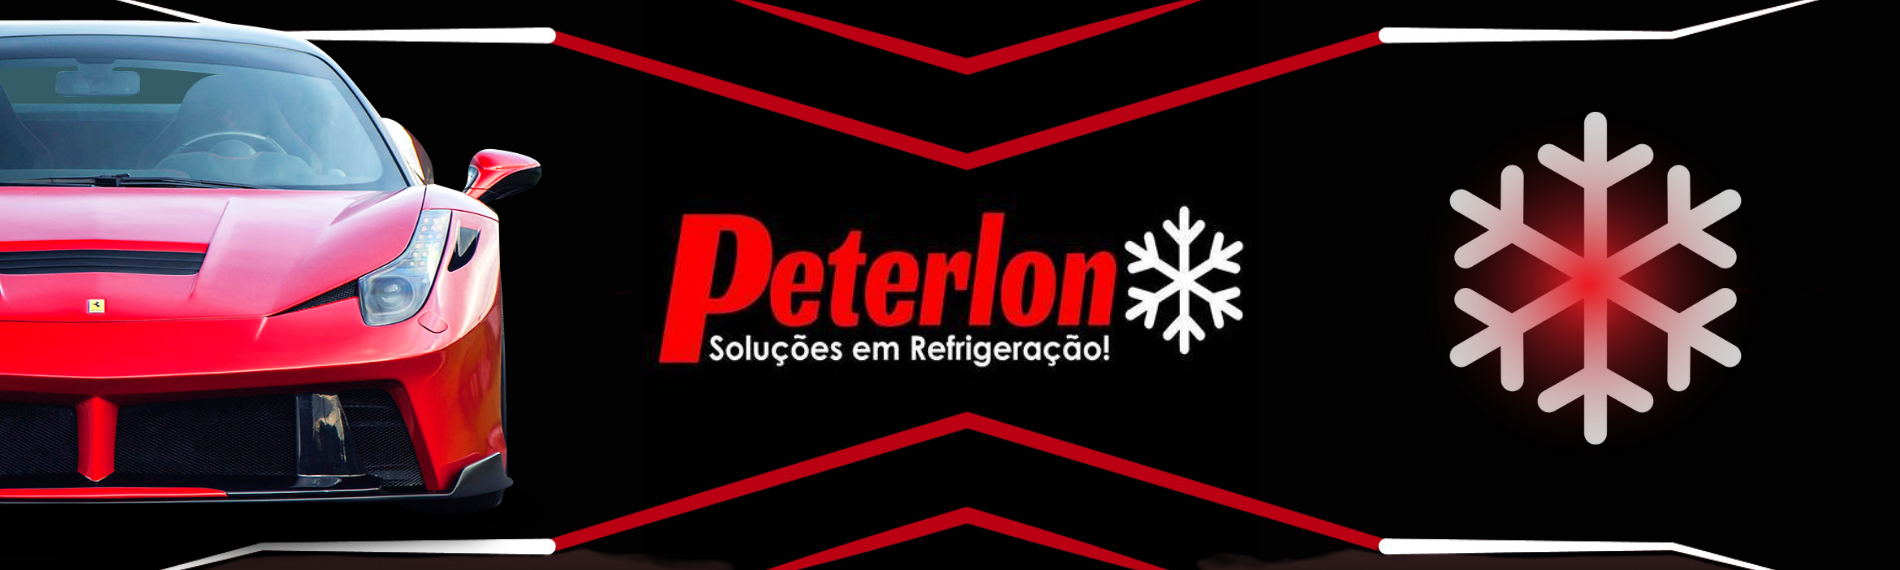 banner da empresa Peterlon Soluções em Refrigeração Automotiva